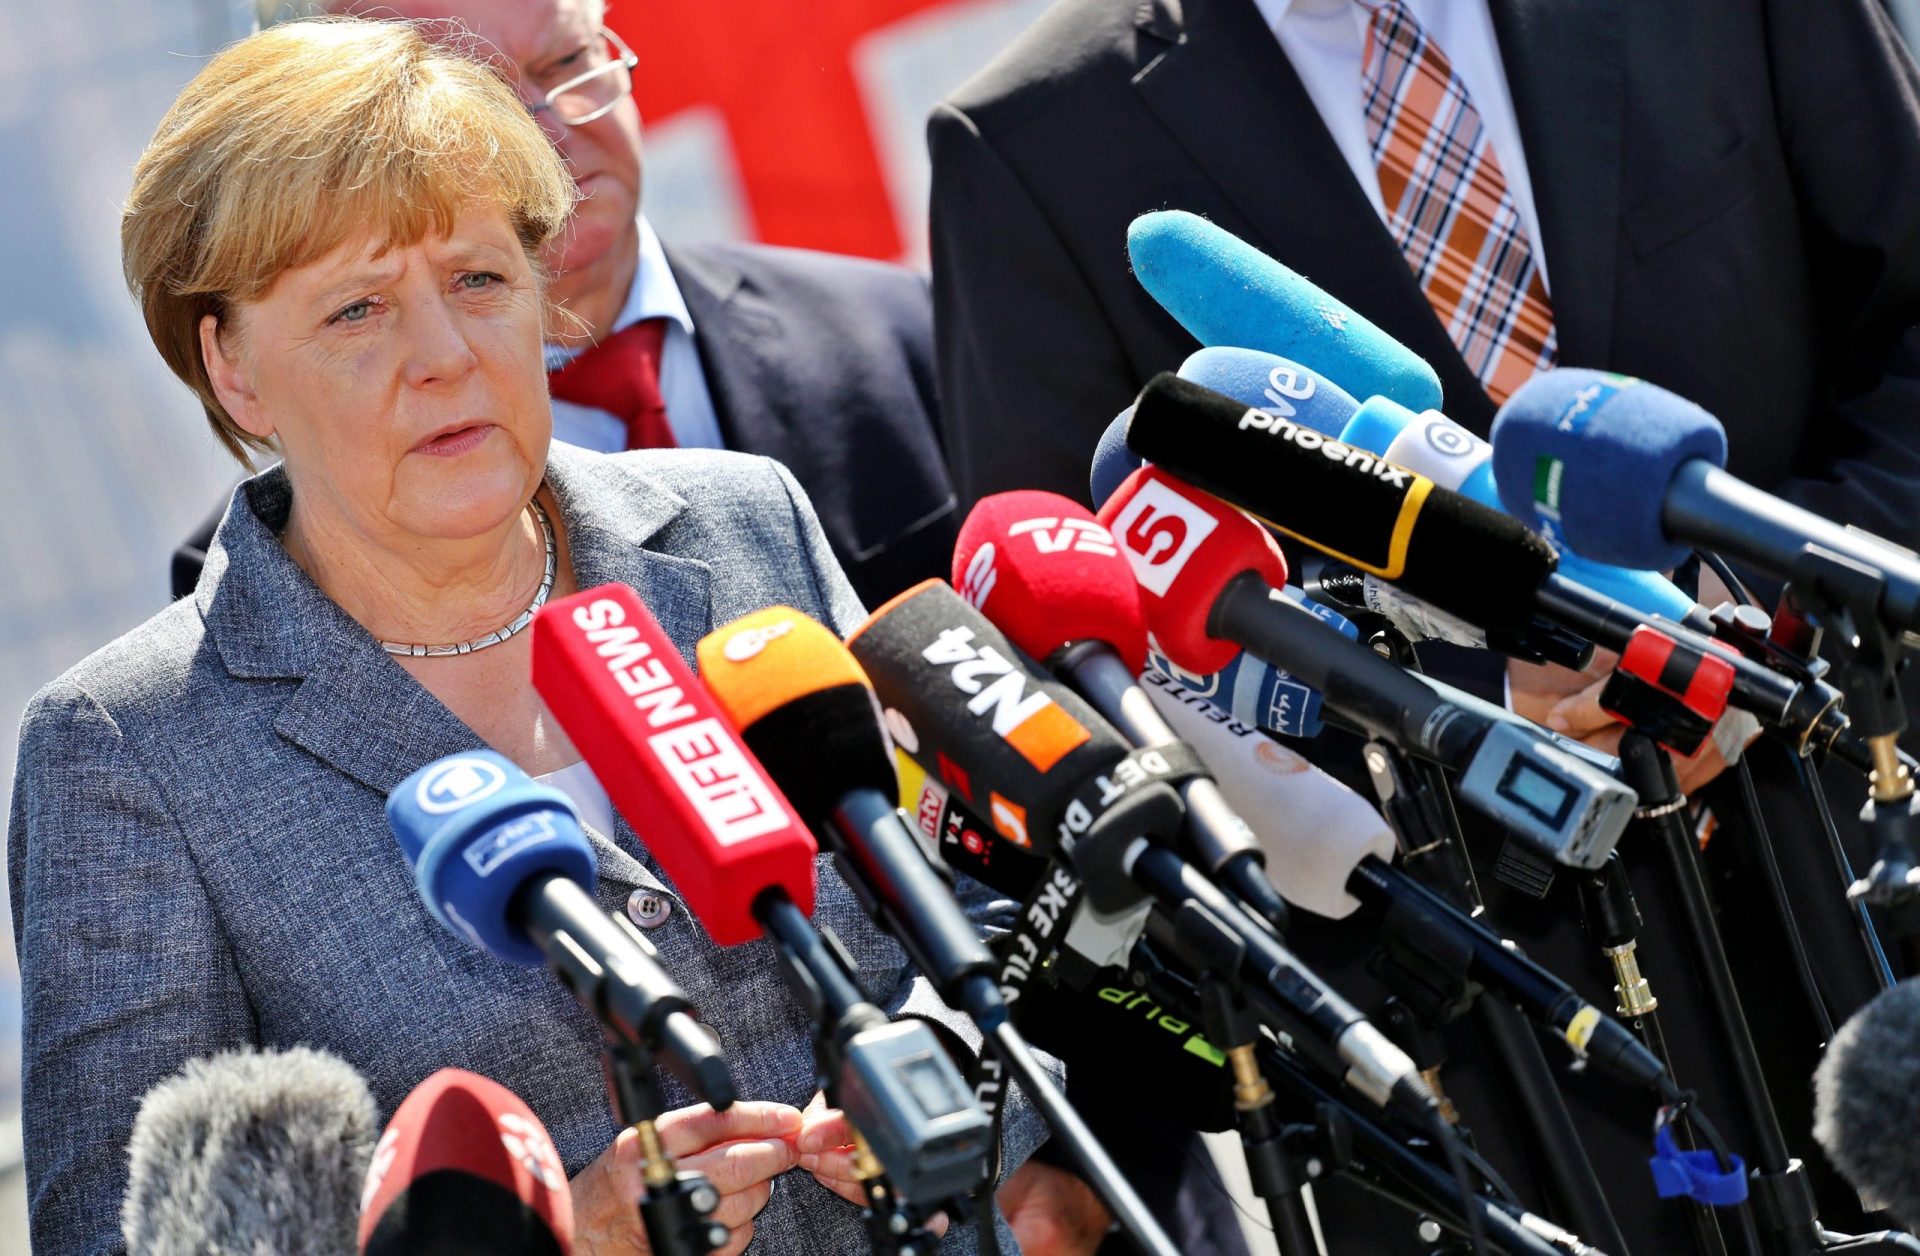 Chanceler alemã assegura que não haverá tolerância com ataques xenófobos